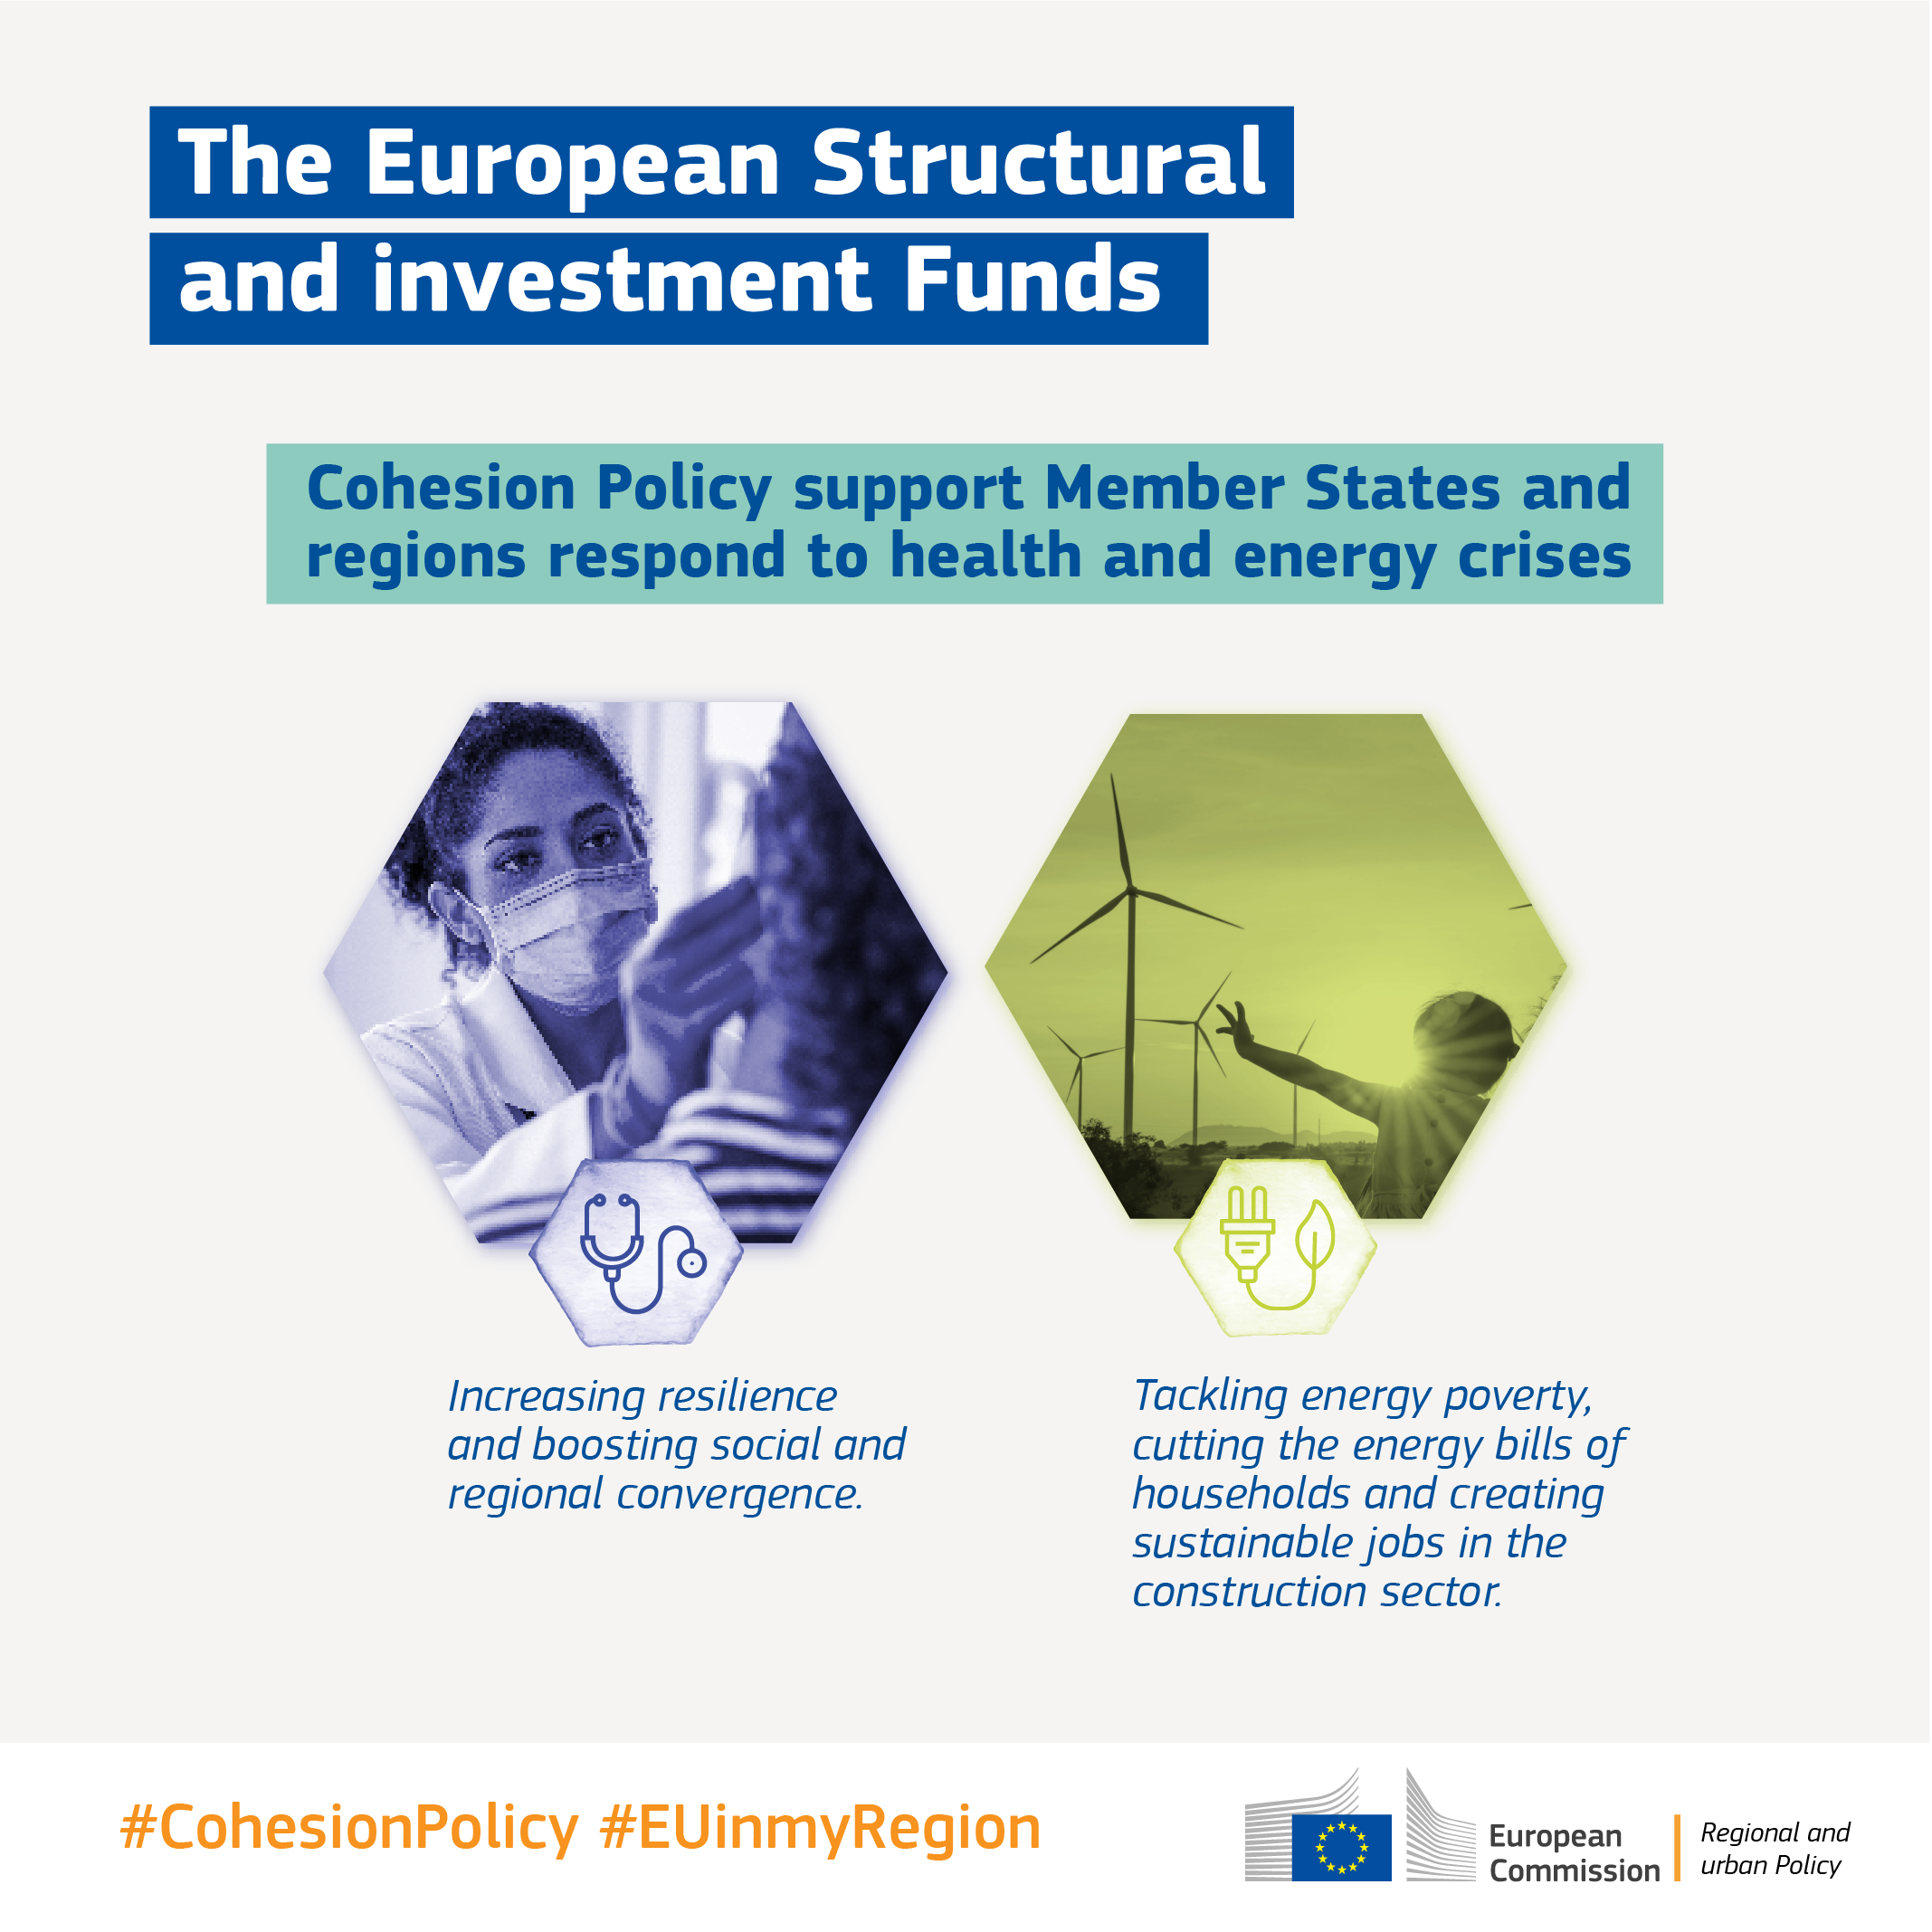 Uniós kohéziós politika: Az európai strukturális és beruházási alapok támogatták a kkv-kat, milliók foglalkoztatását és a tiszta energiatermelést